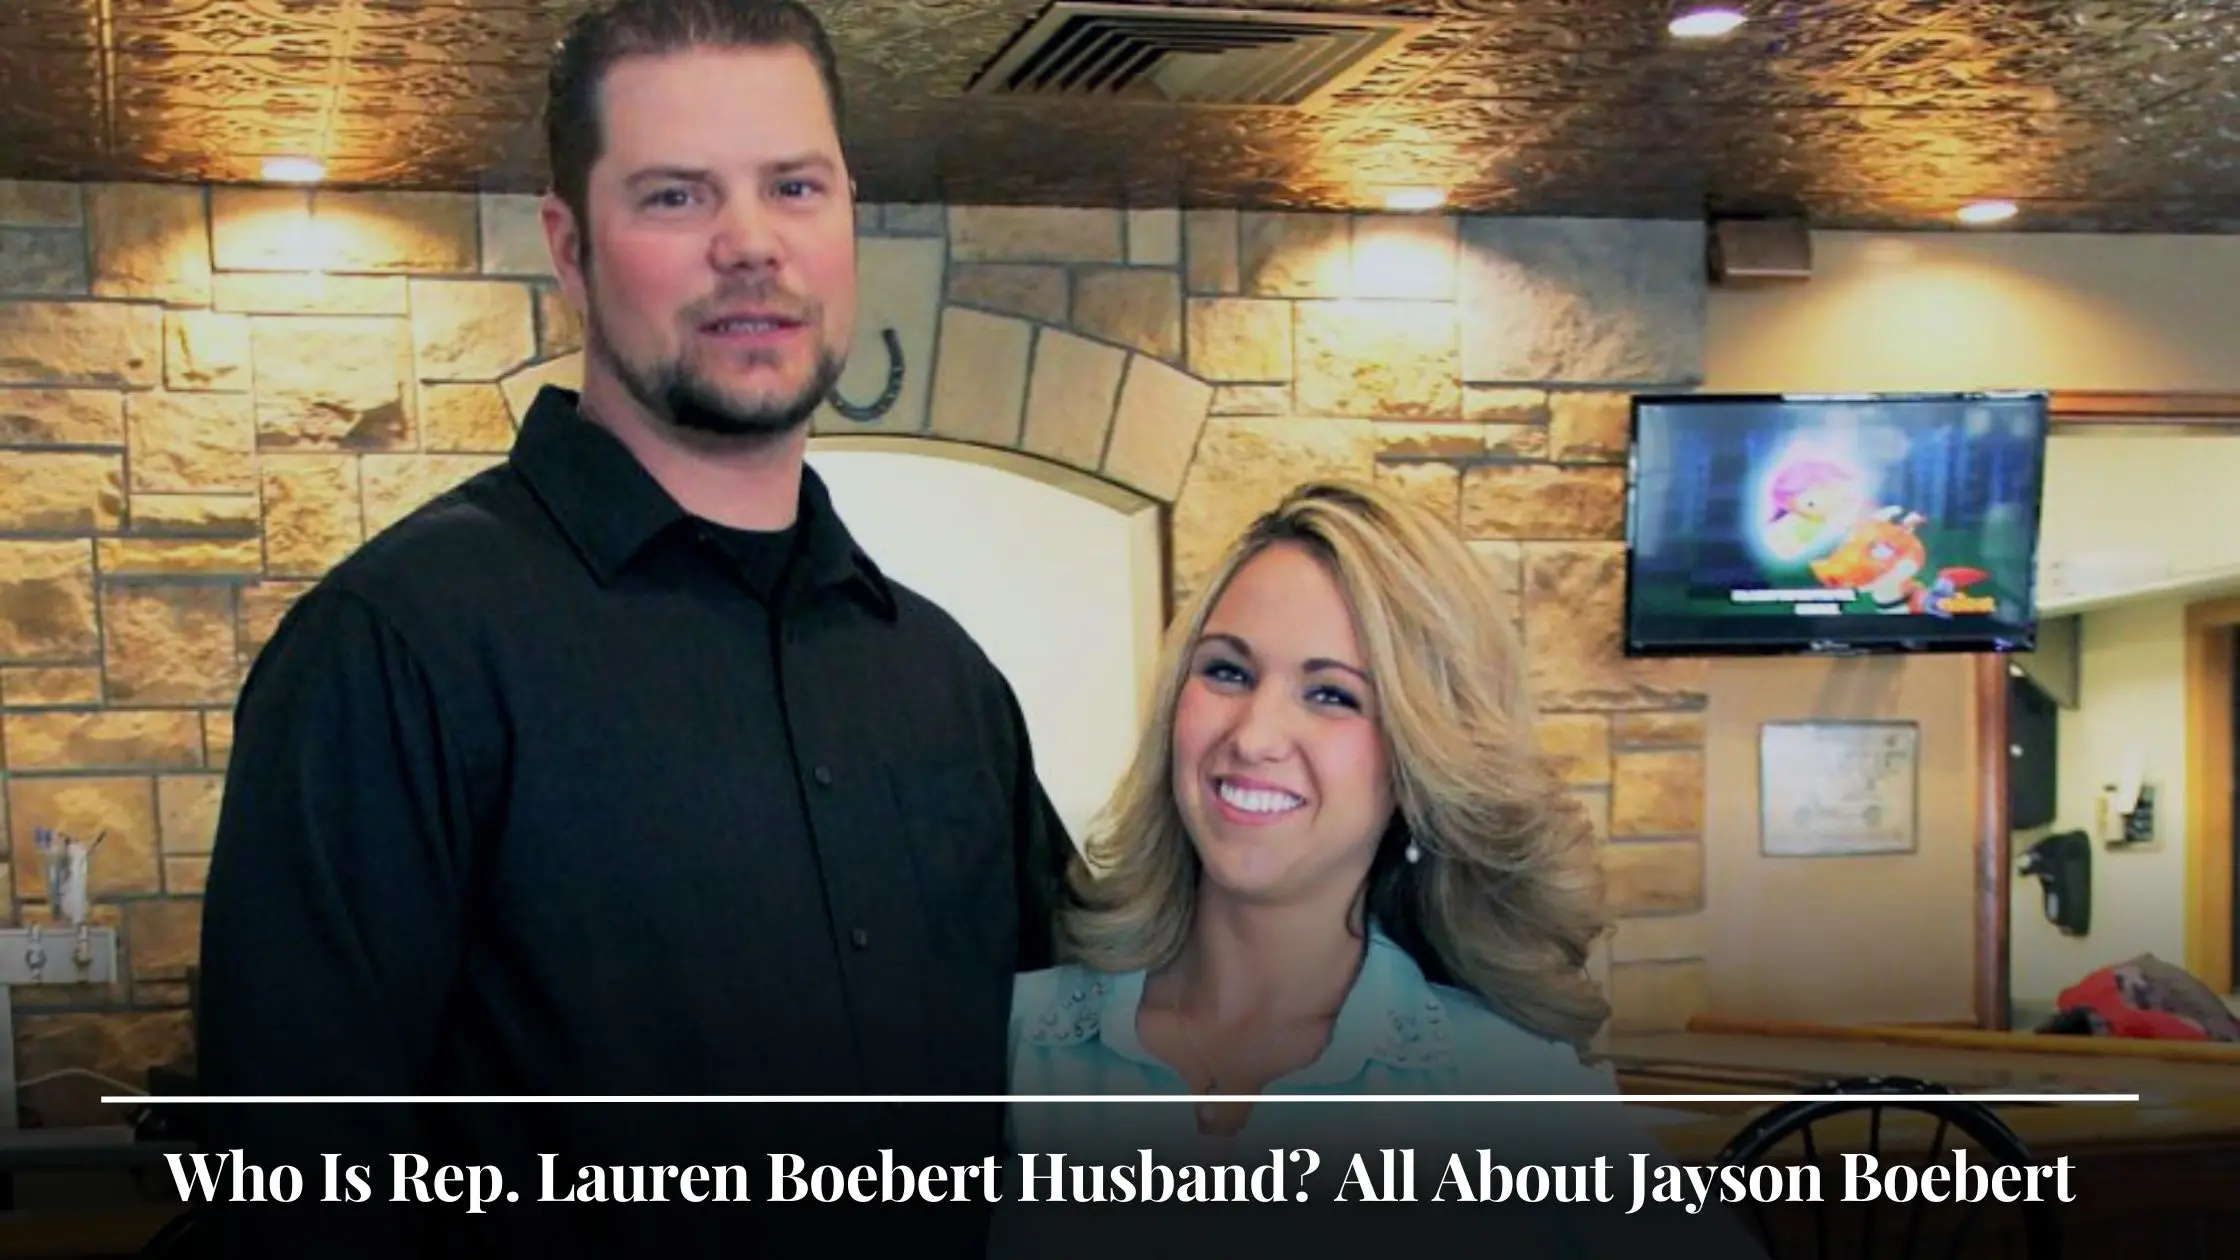 Who Is Rep. Lauren Boebert Husband All About Jayson Boebert